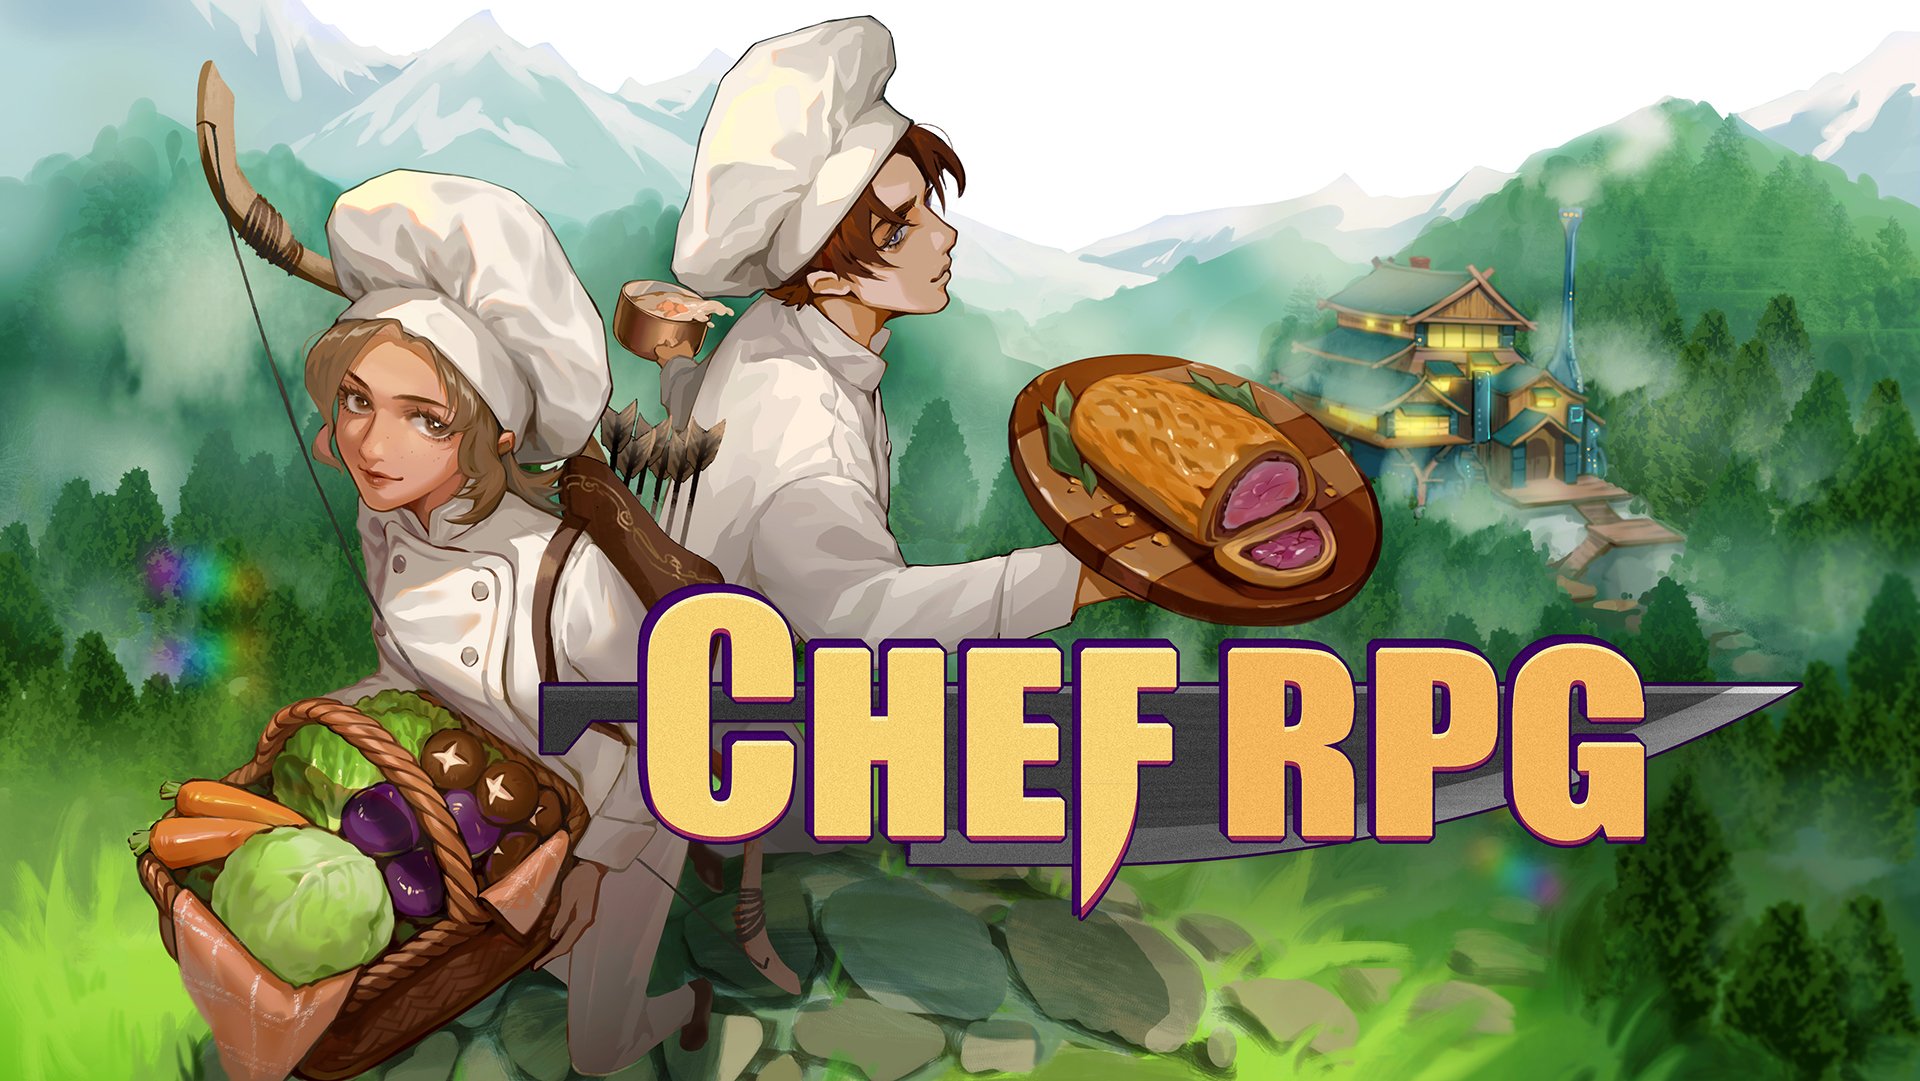 Chef RPG